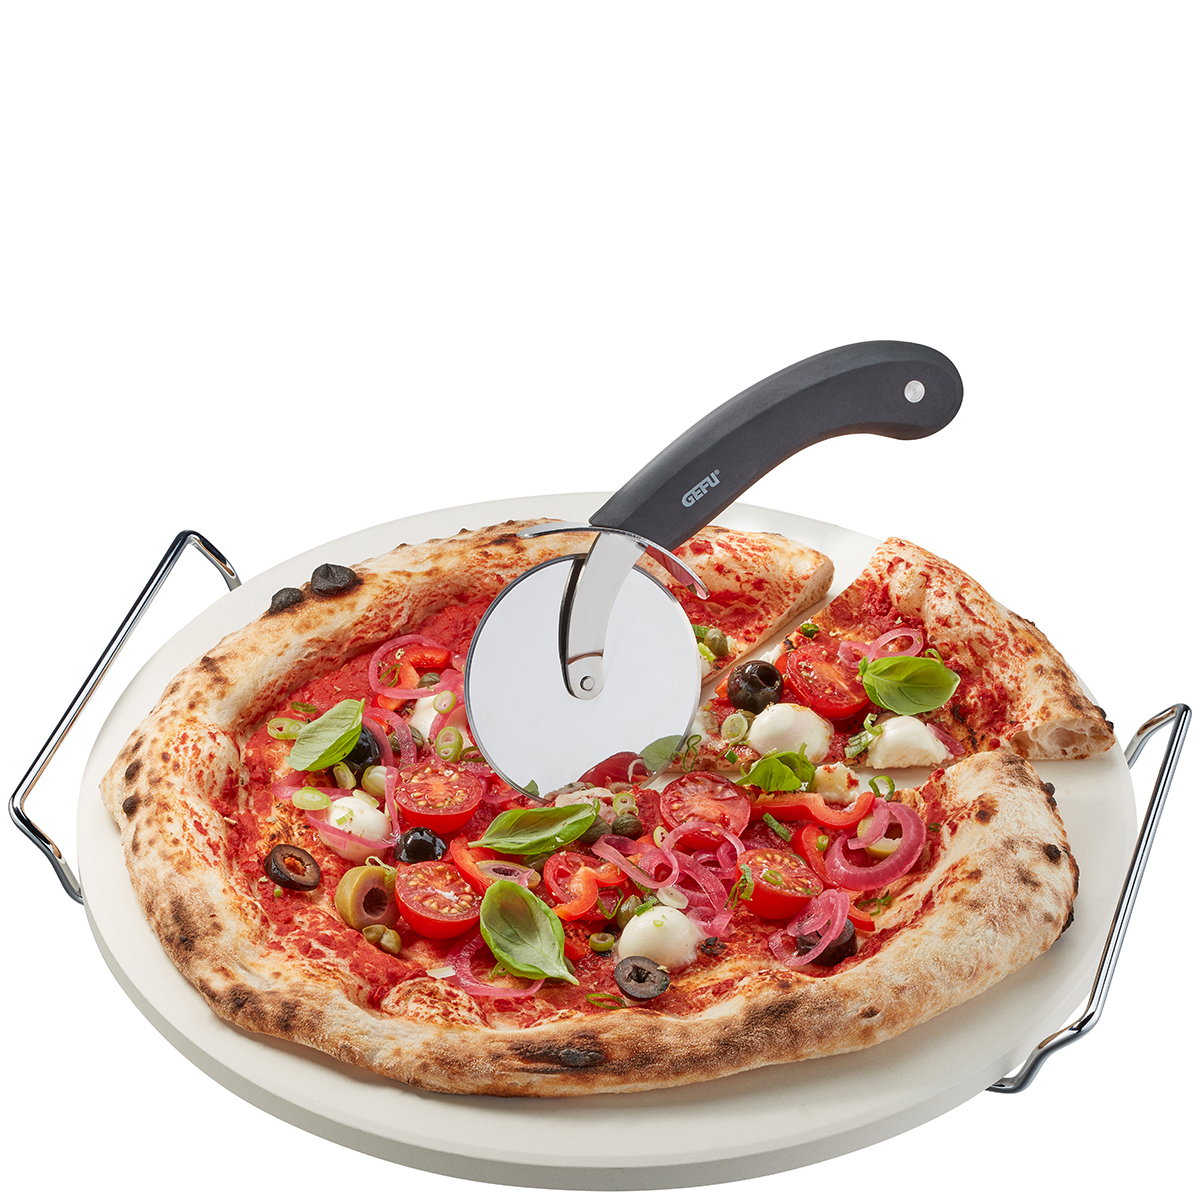 Pizzastein mit Gestell + Pizzaschneider DARIOSO, rund